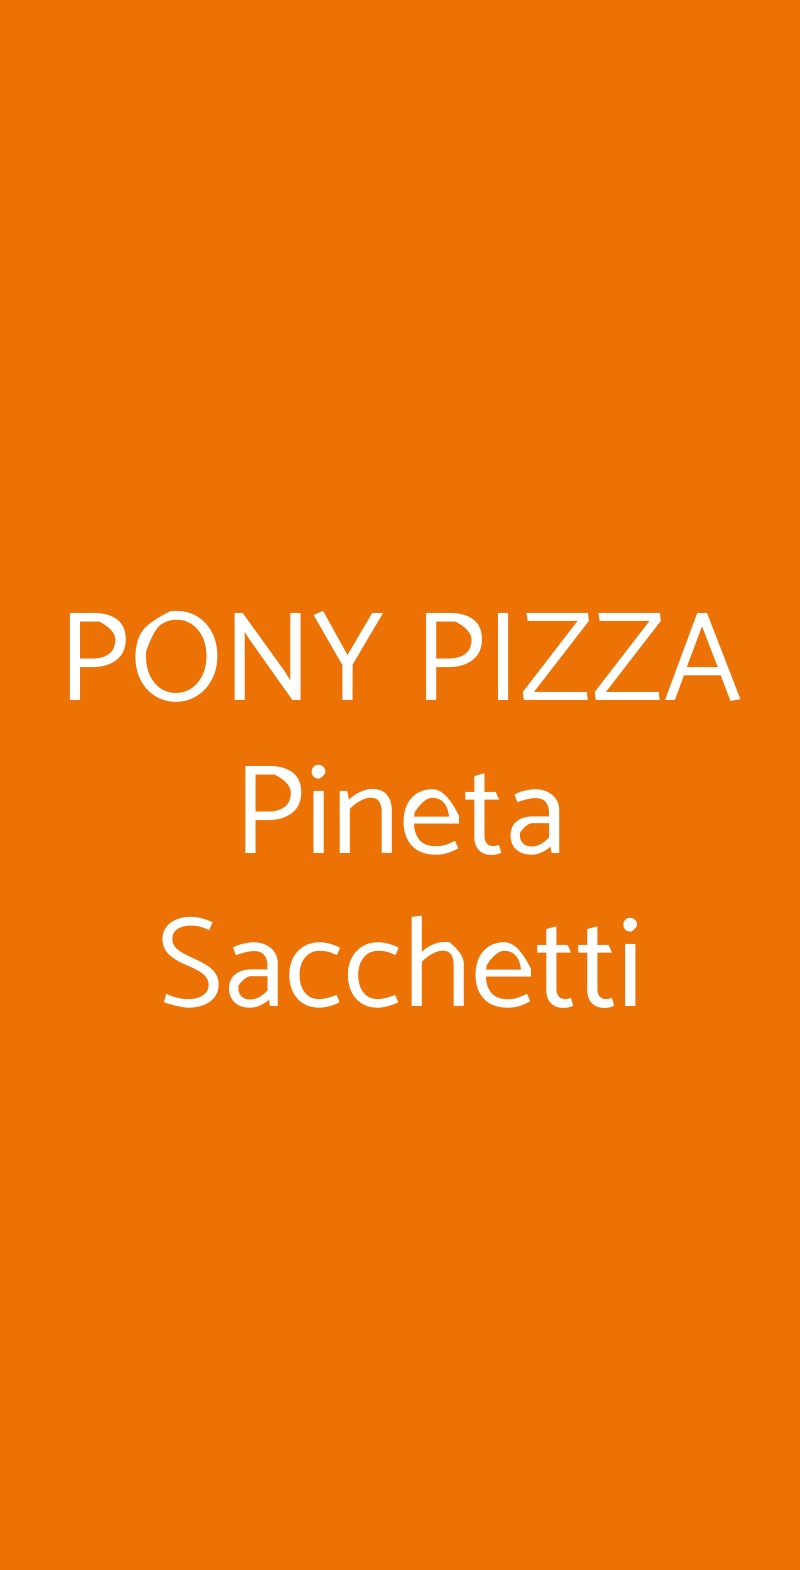 PONY PIZZA Pineta Sacchetti Roma menù 1 pagina